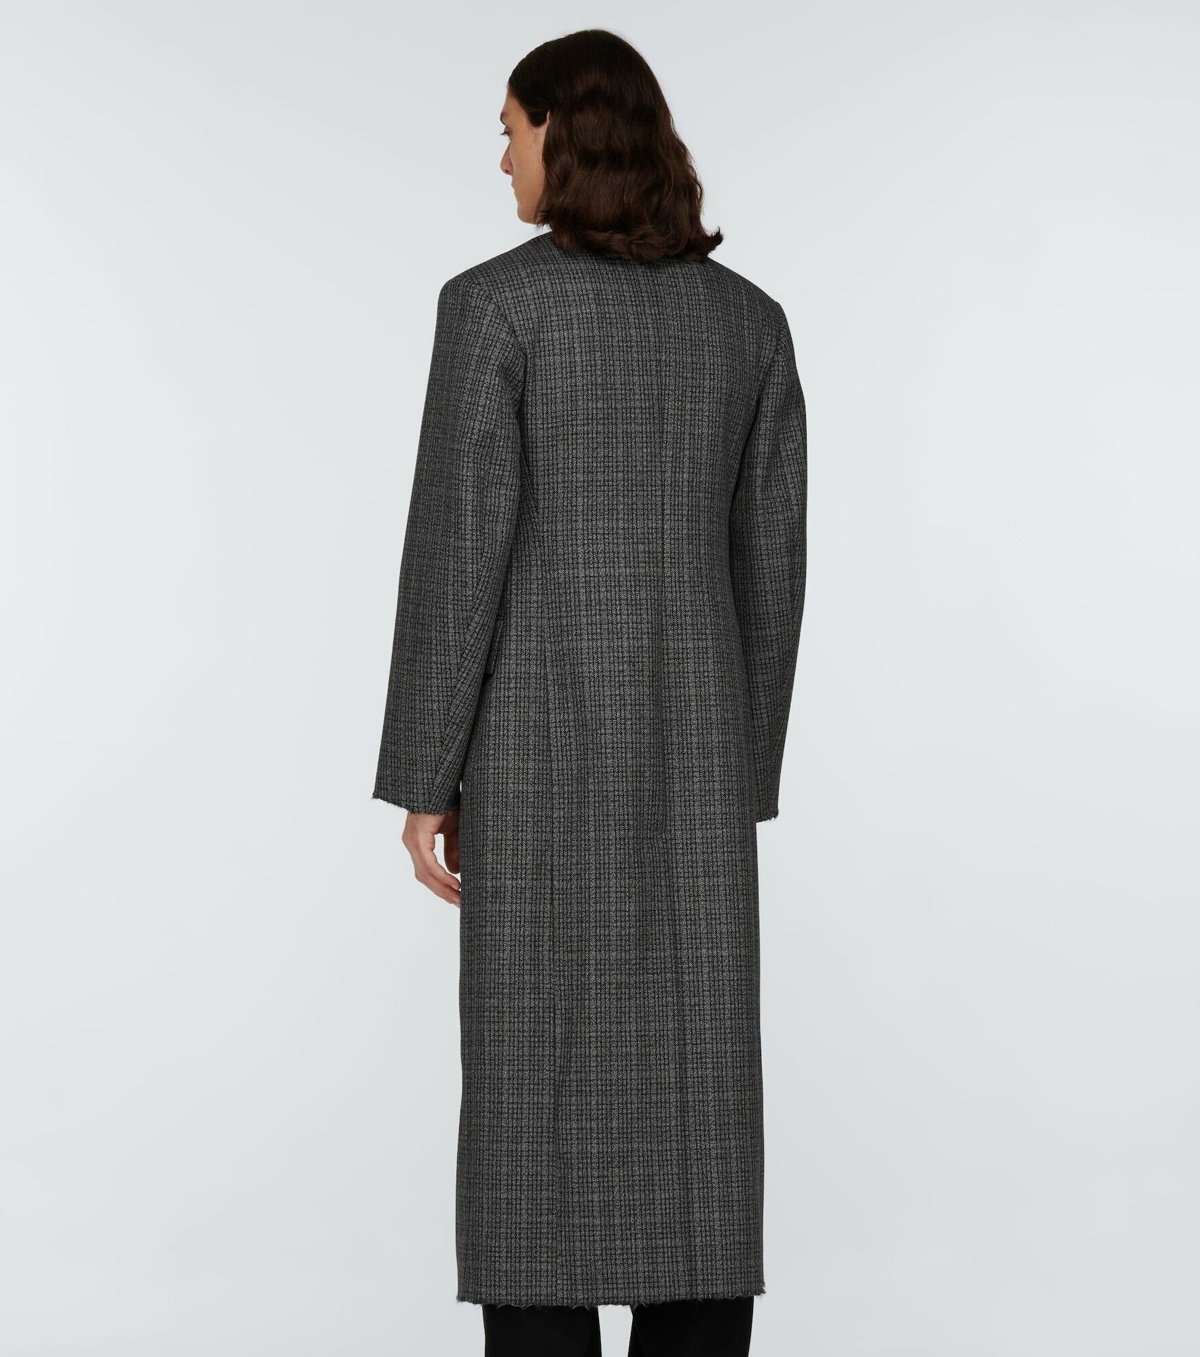 Balenciaga - Raw Cut double-breasted wool coat Balenciaga